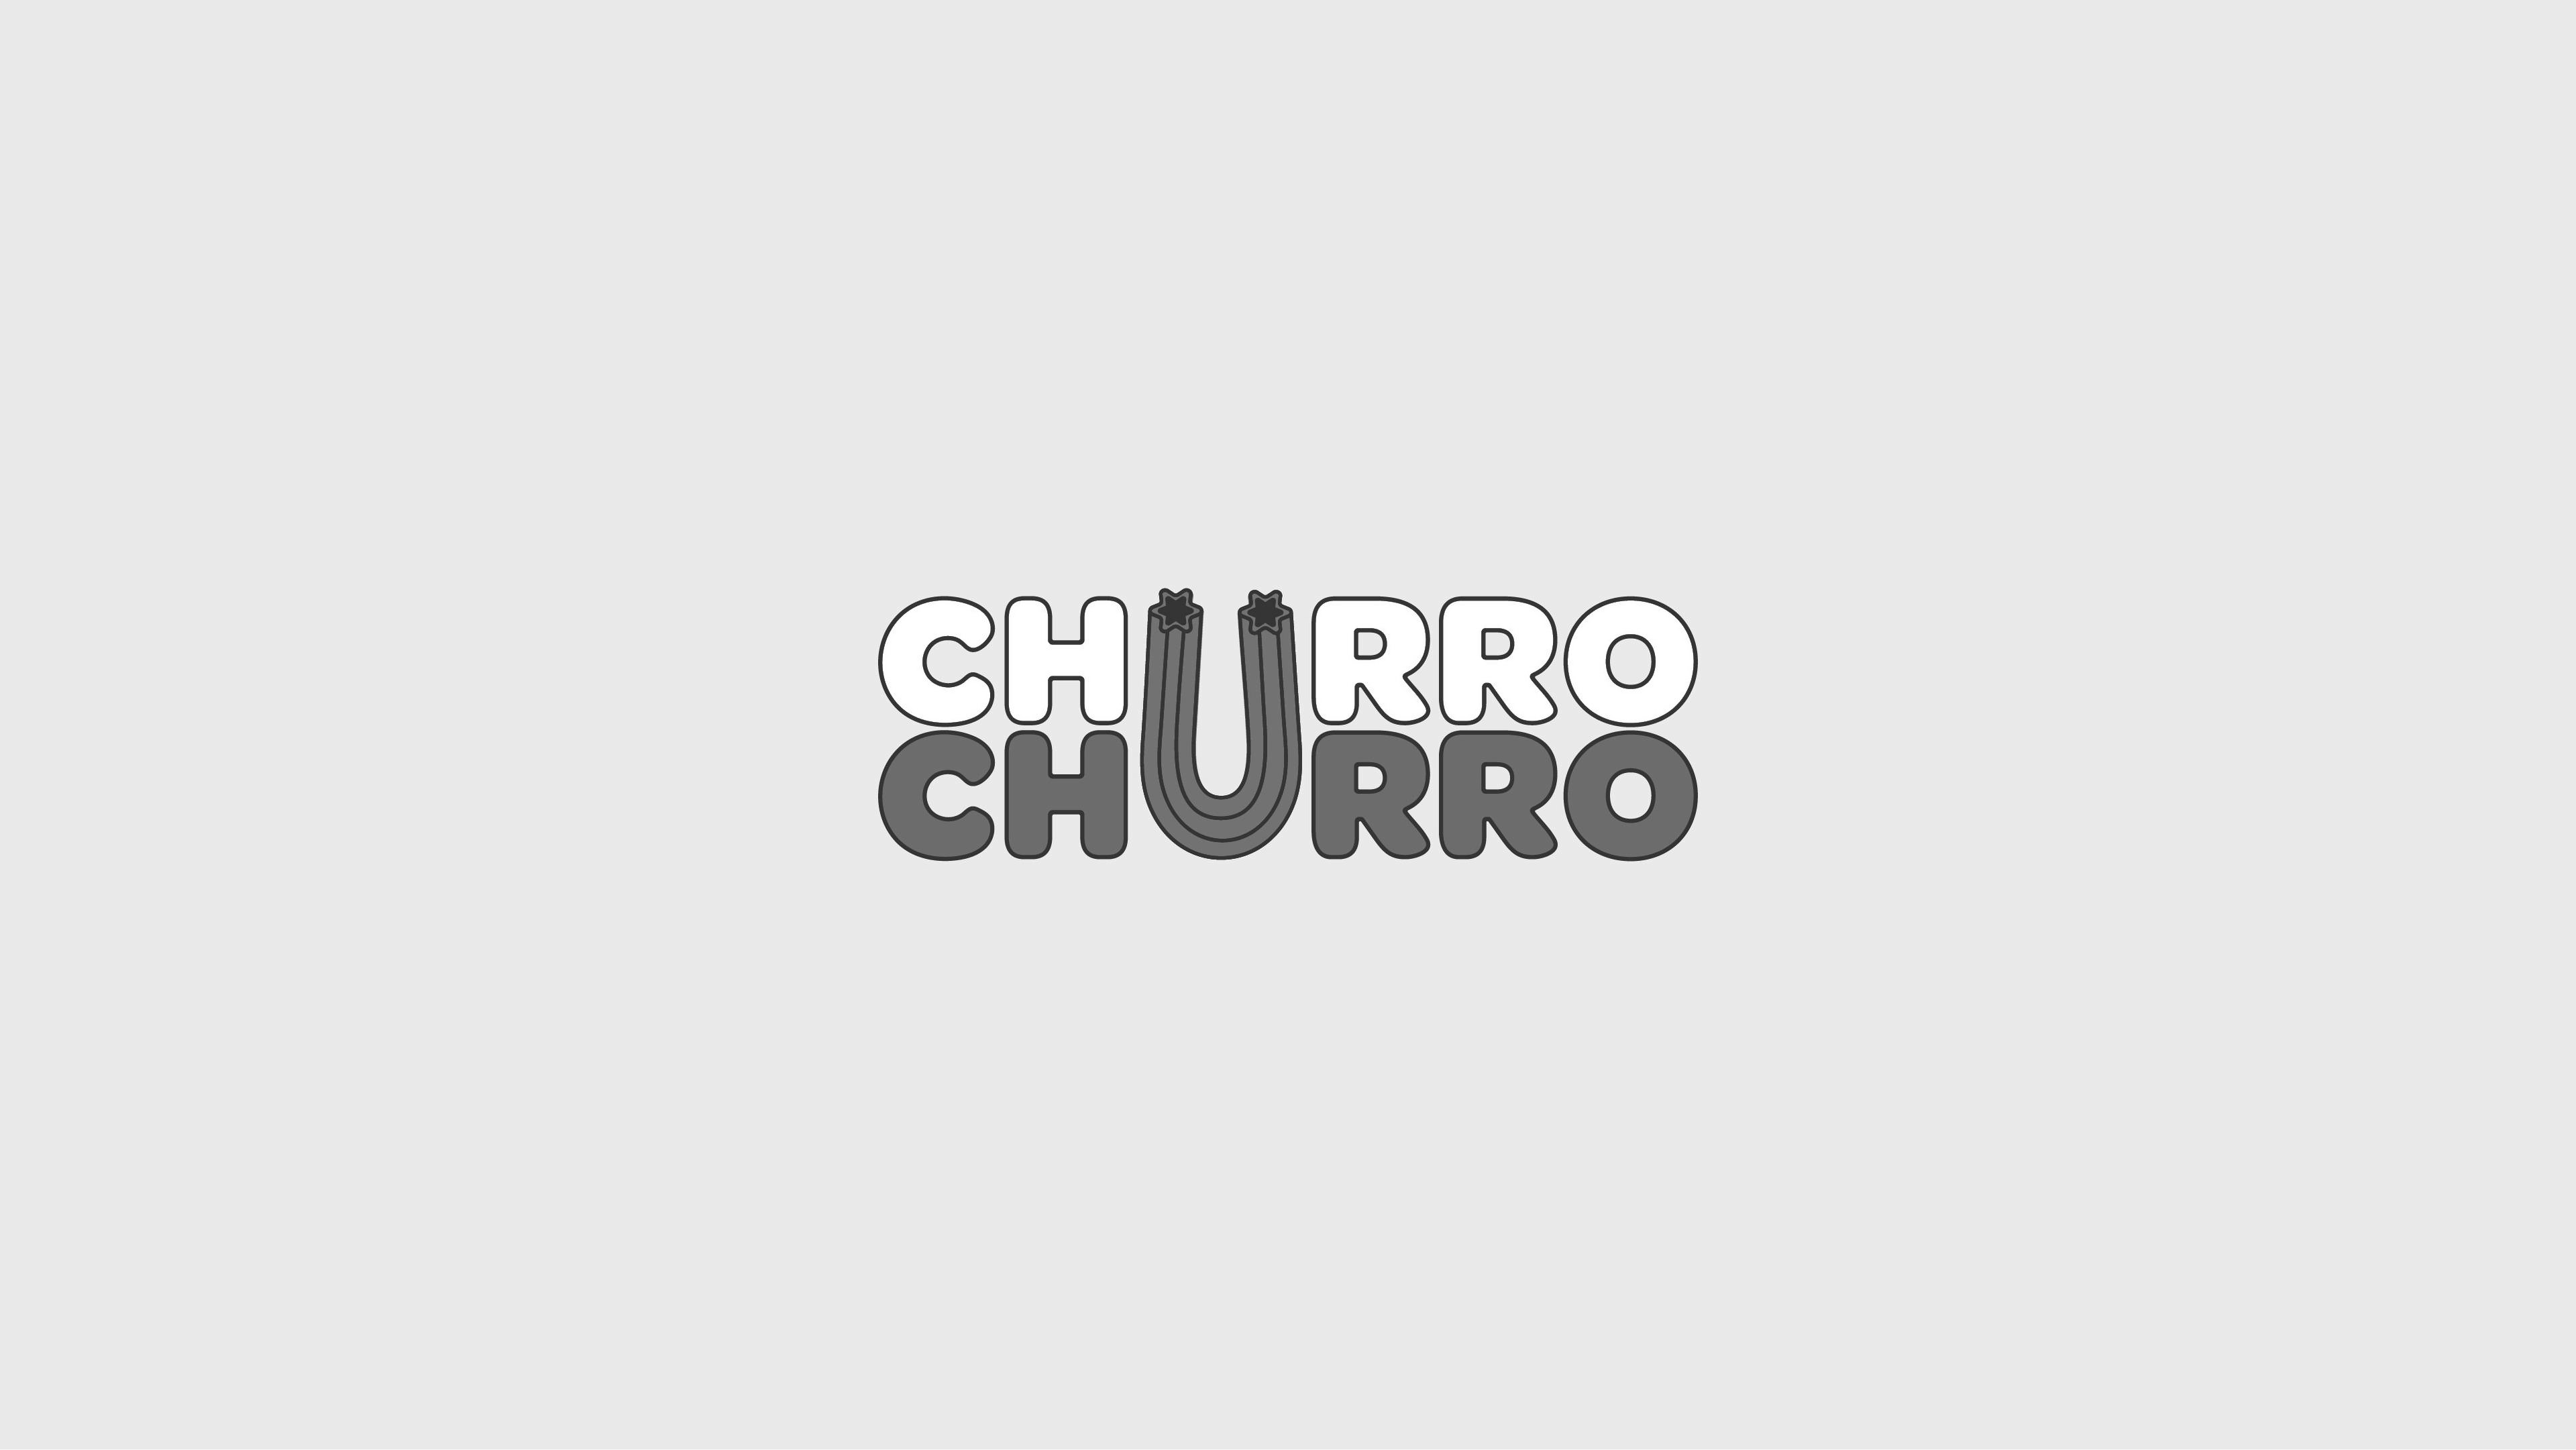 Trademark Logo CHURRO CHURRO